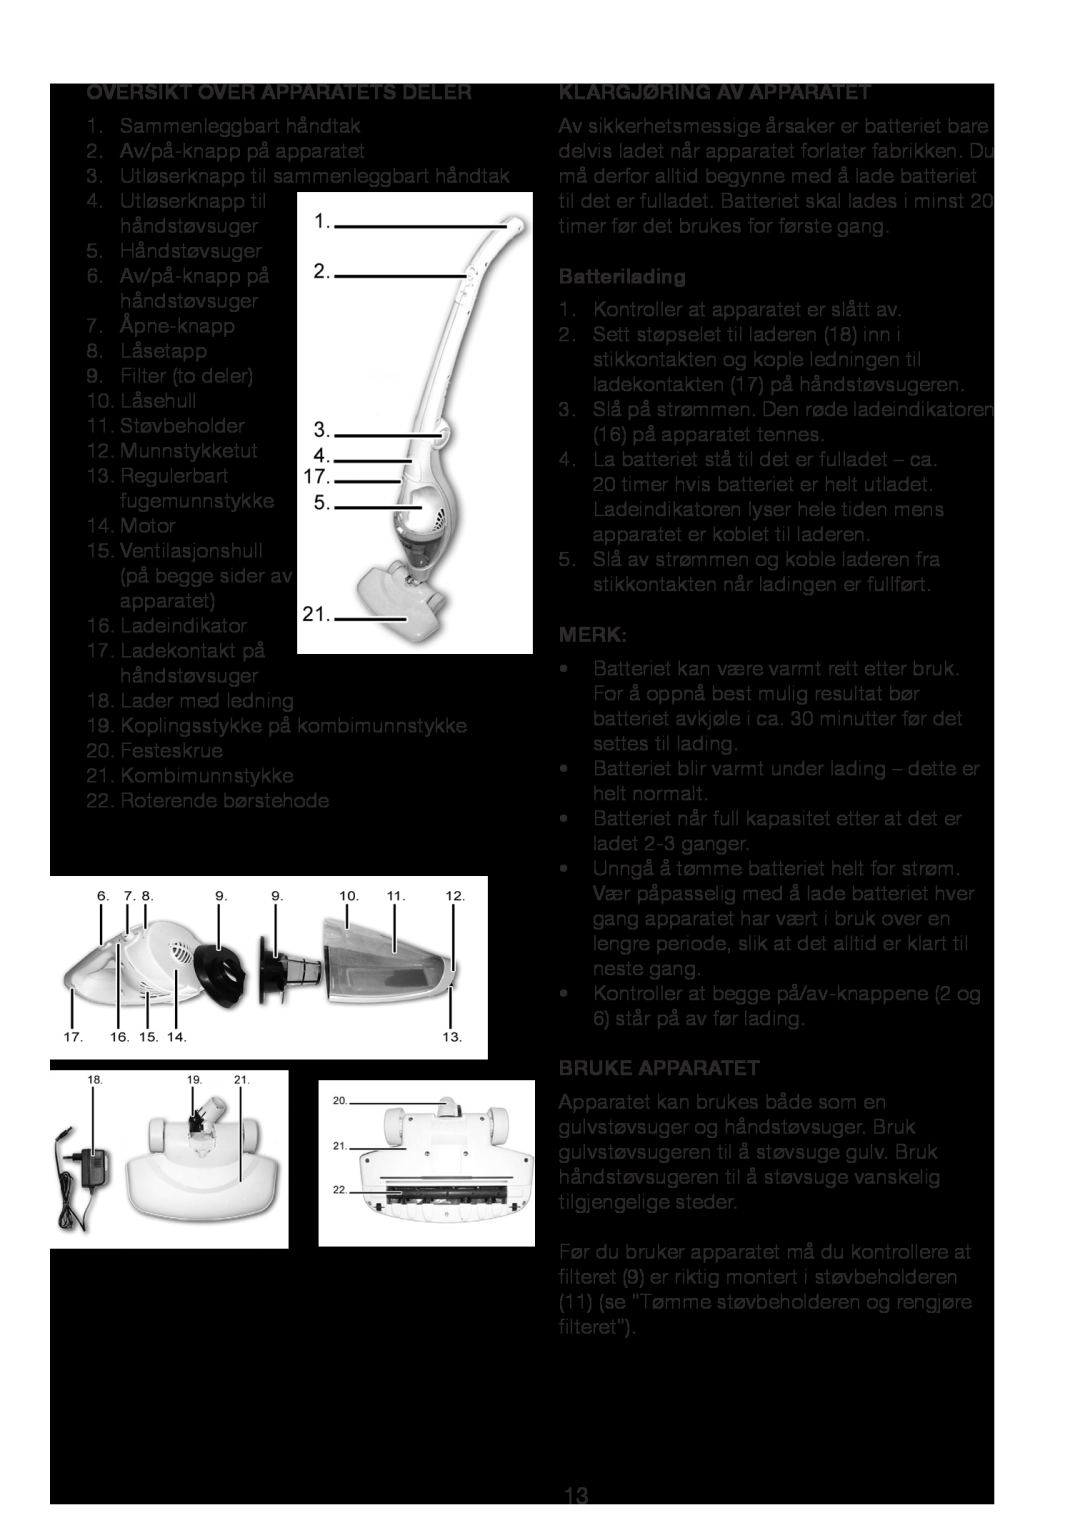 Melissa 640-15 manual Oversikt Over Apparatets Deler, Klargjøring Av Apparatet, Batterilading, Merk, Bruke Apparatet 